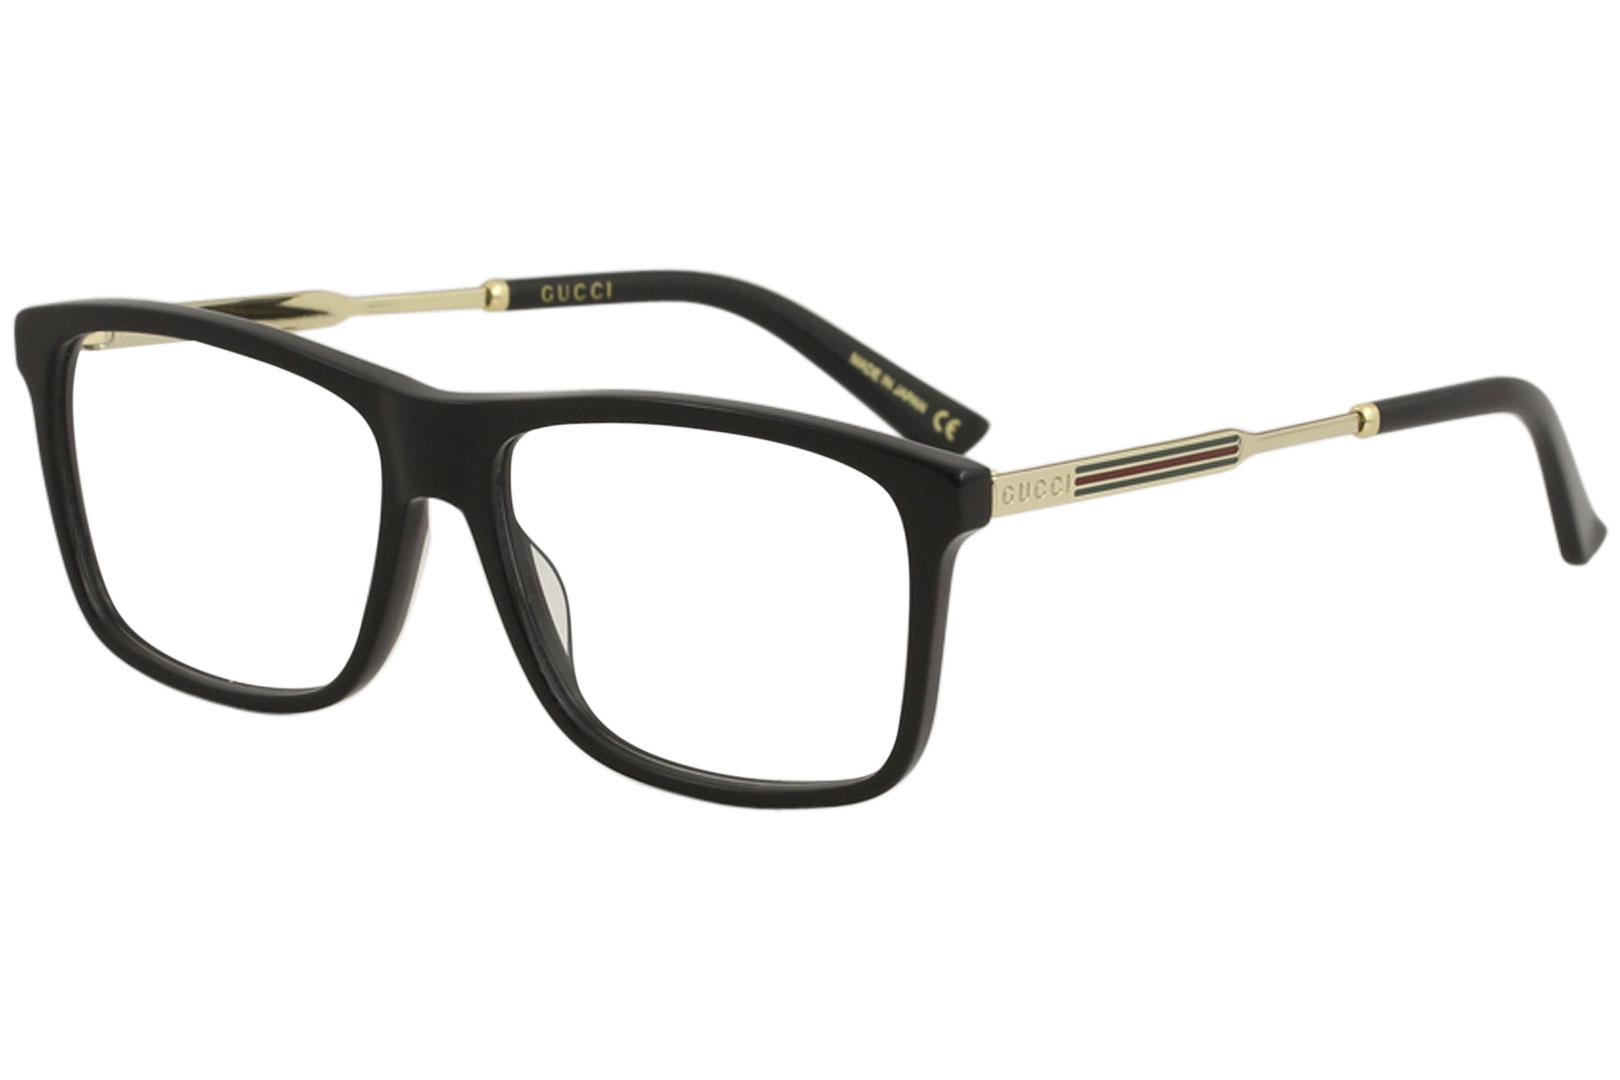 Gucci Men's Eyeglasses GG0303O GG/0303/O Full Rim Optical Frame - Black/Gold   001 - Lens 55 Bridge 15 Temple 150mm